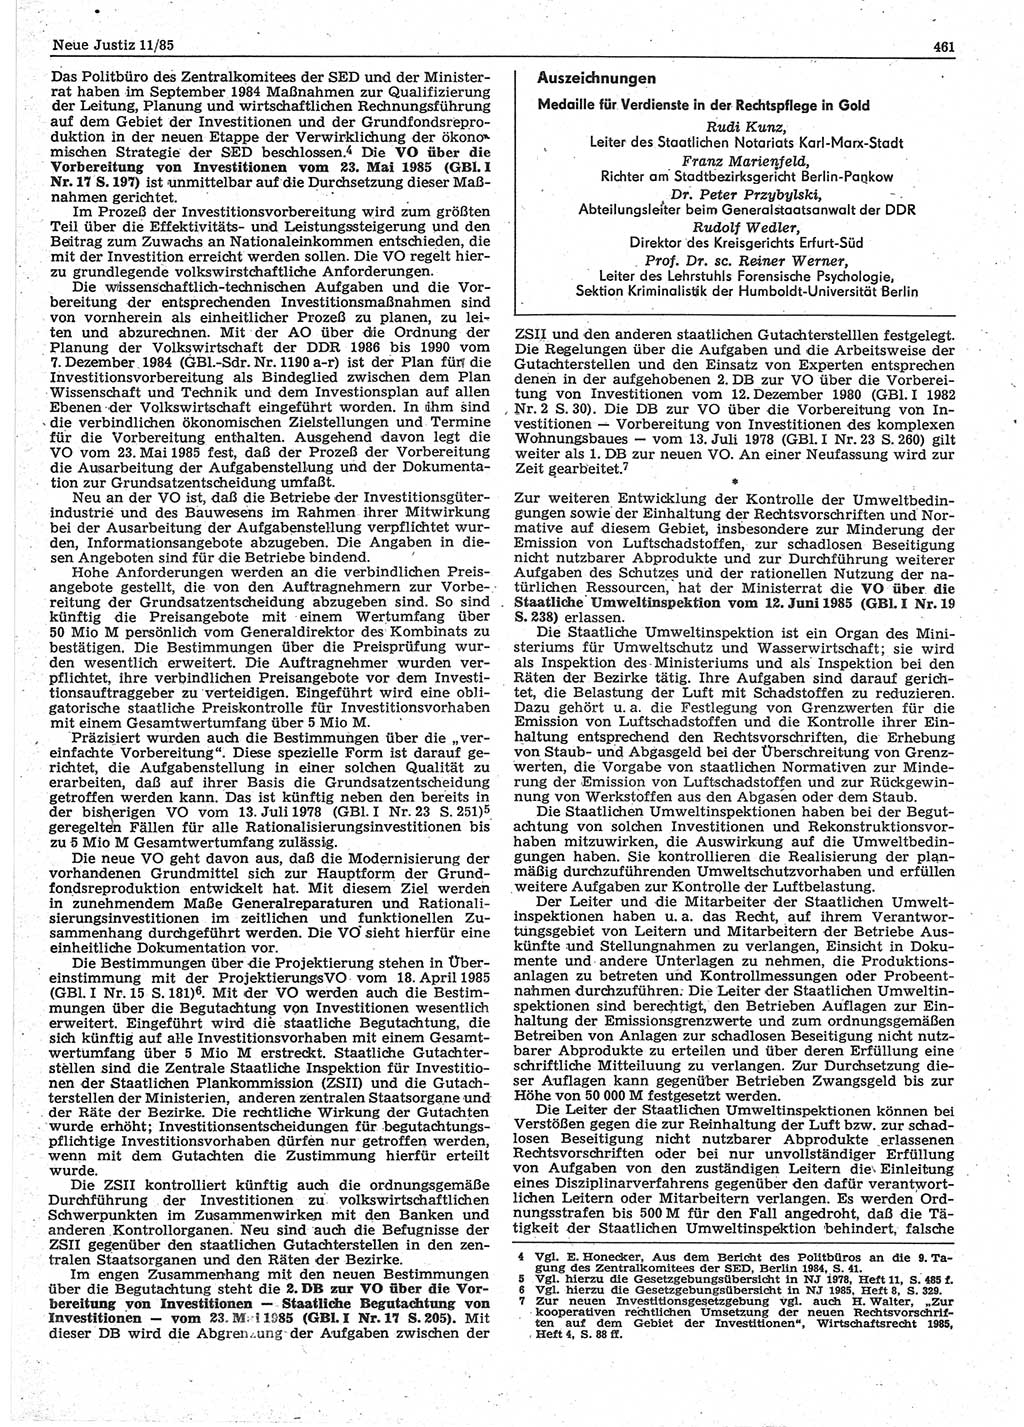 Neue Justiz (NJ), Zeitschrift für sozialistisches Recht und Gesetzlichkeit [Deutsche Demokratische Republik (DDR)], 39. Jahrgang 1985, Seite 461 (NJ DDR 1985, S. 461)